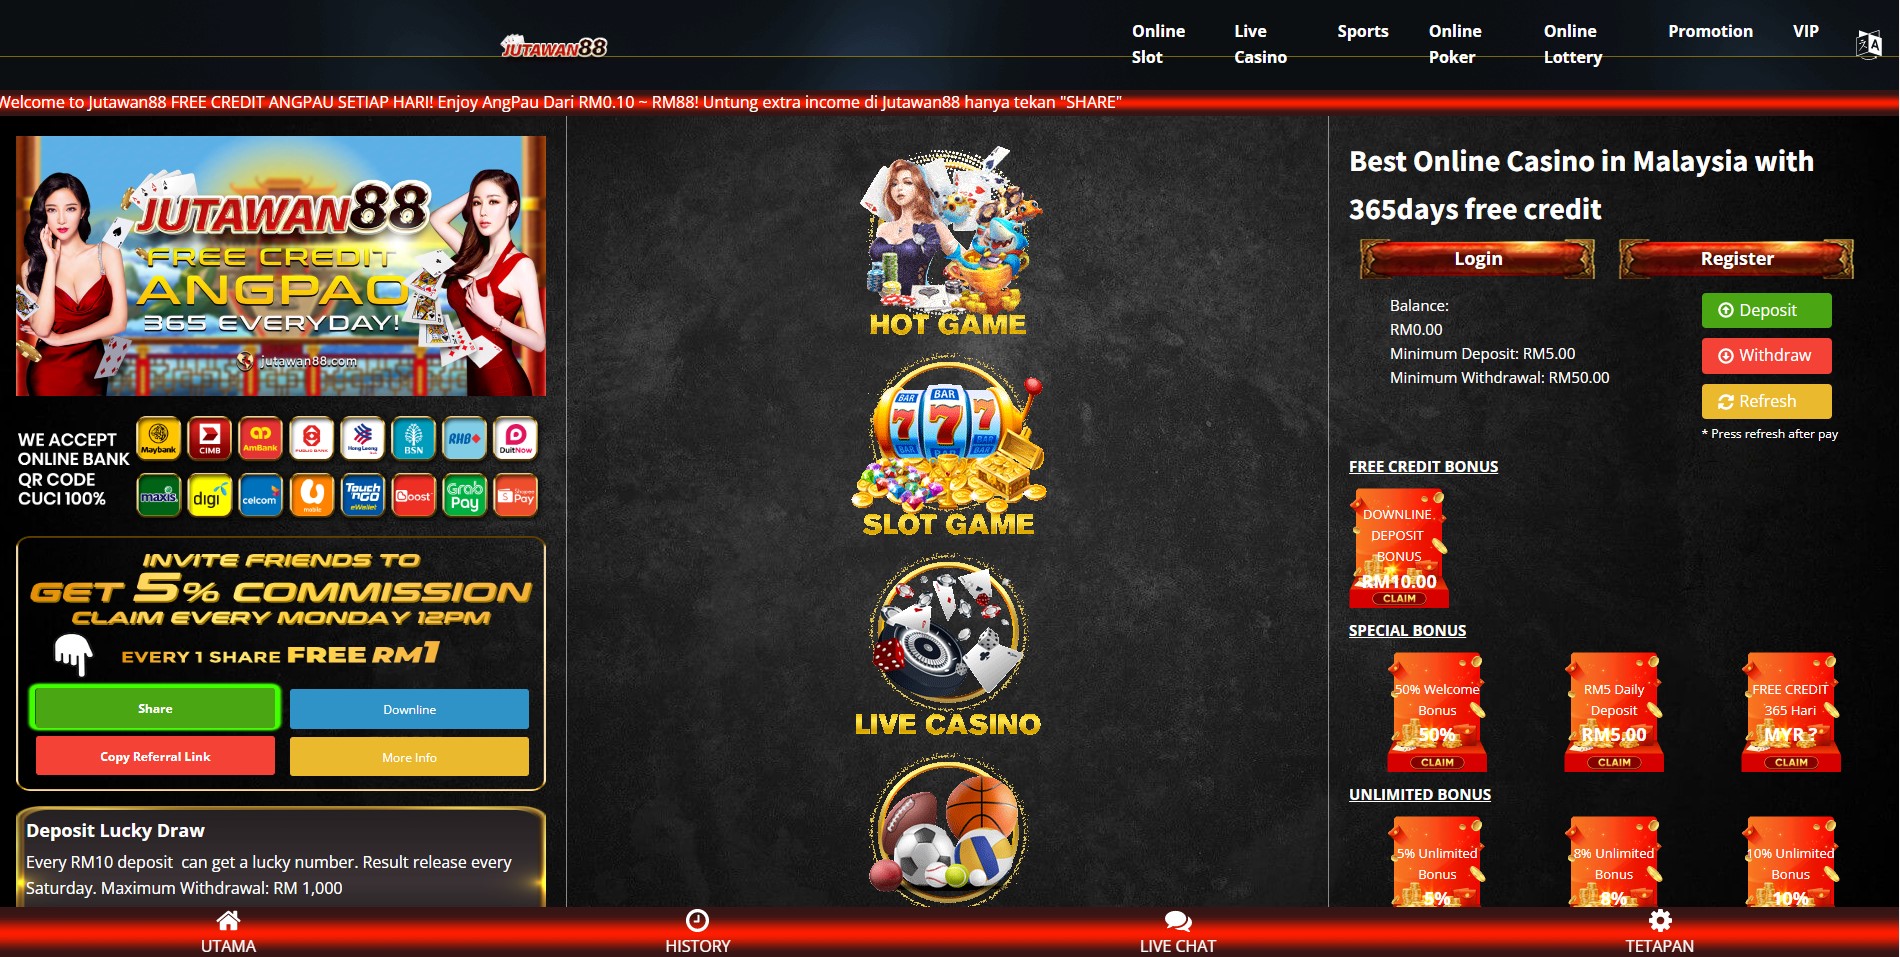 Jutawan88 casino homepage